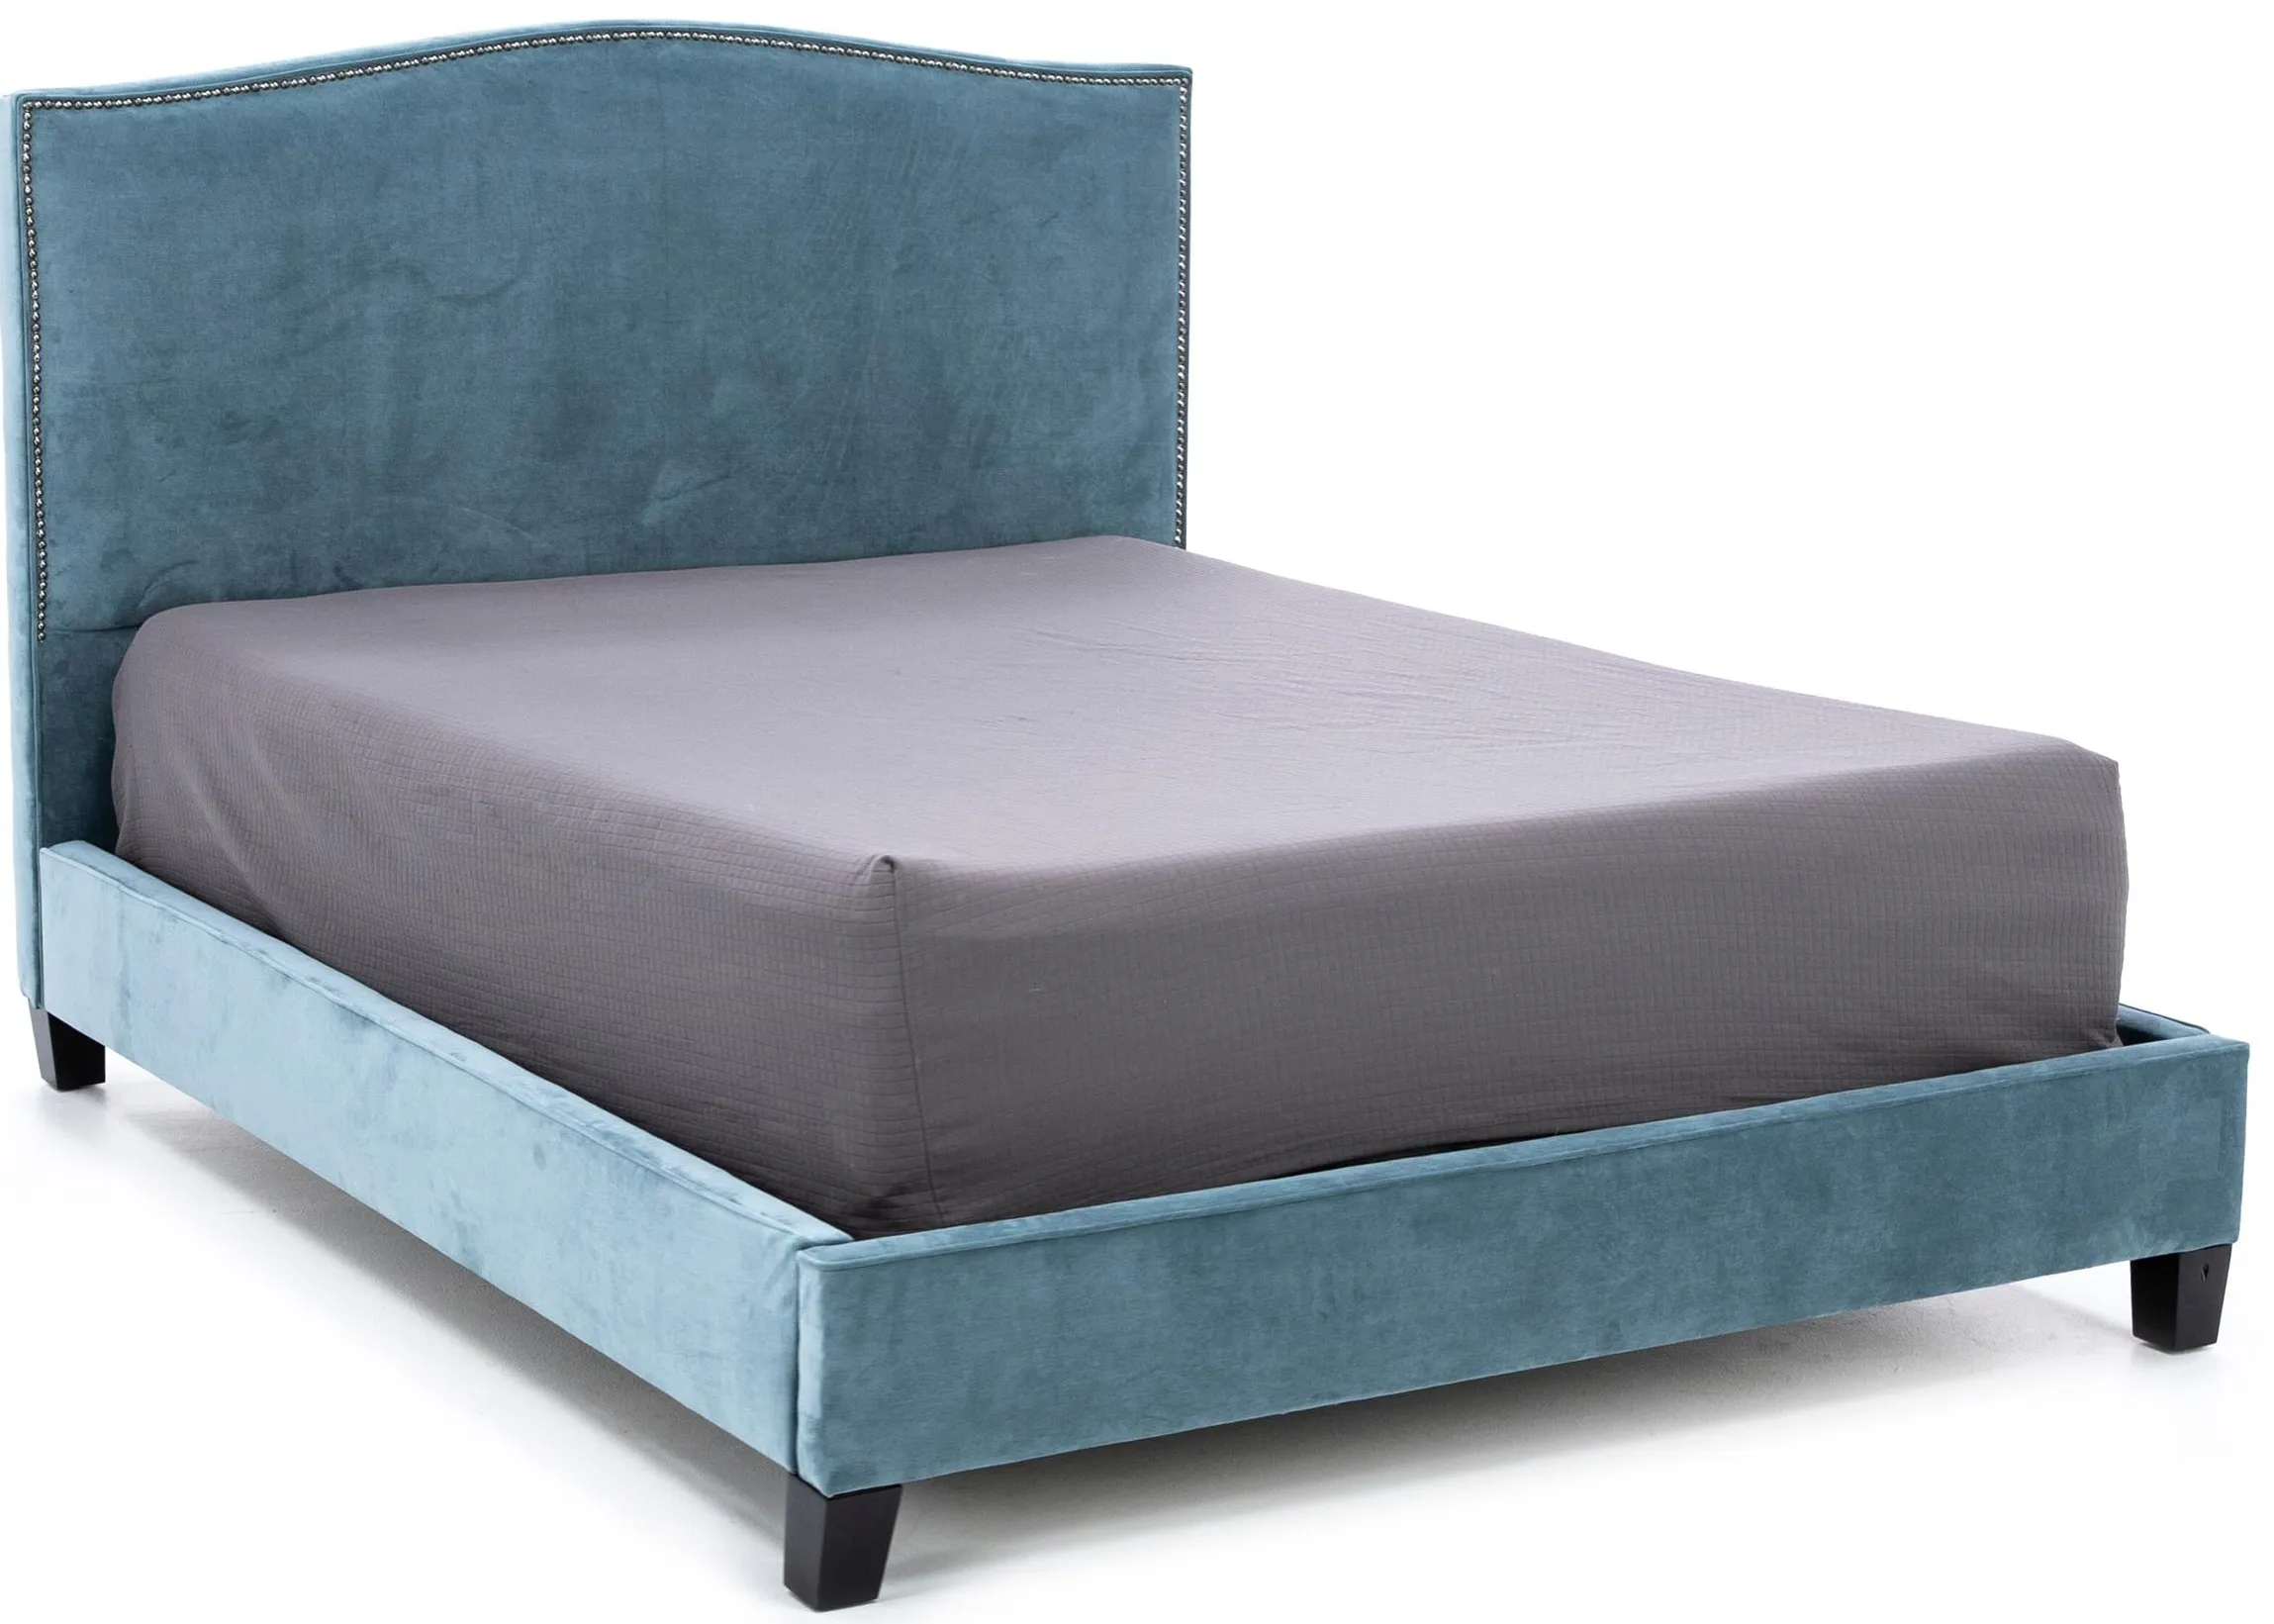 Corey Queen Upholstered Bed